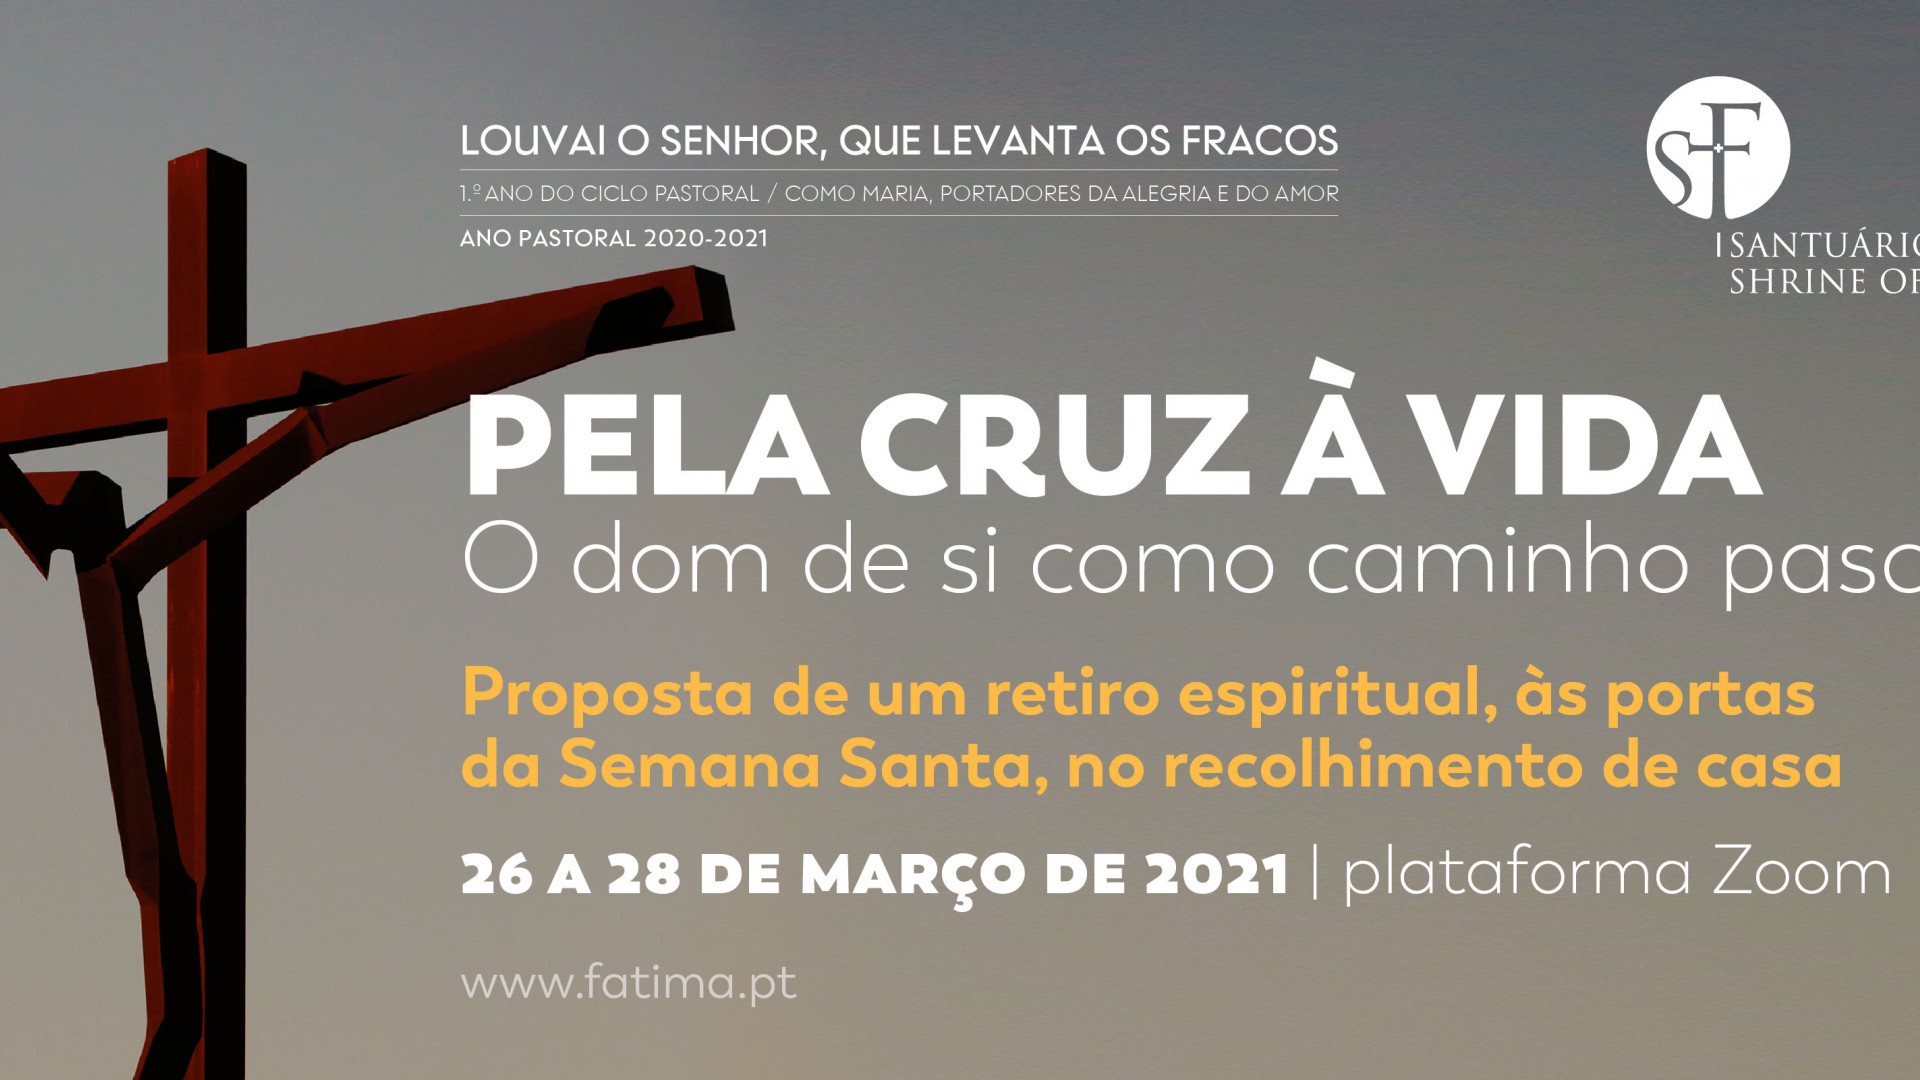 «Pela cruz à vida - O dom de si como caminho pascal» é o tema do segundo retiro online promovido pelo Santuário de Fátima